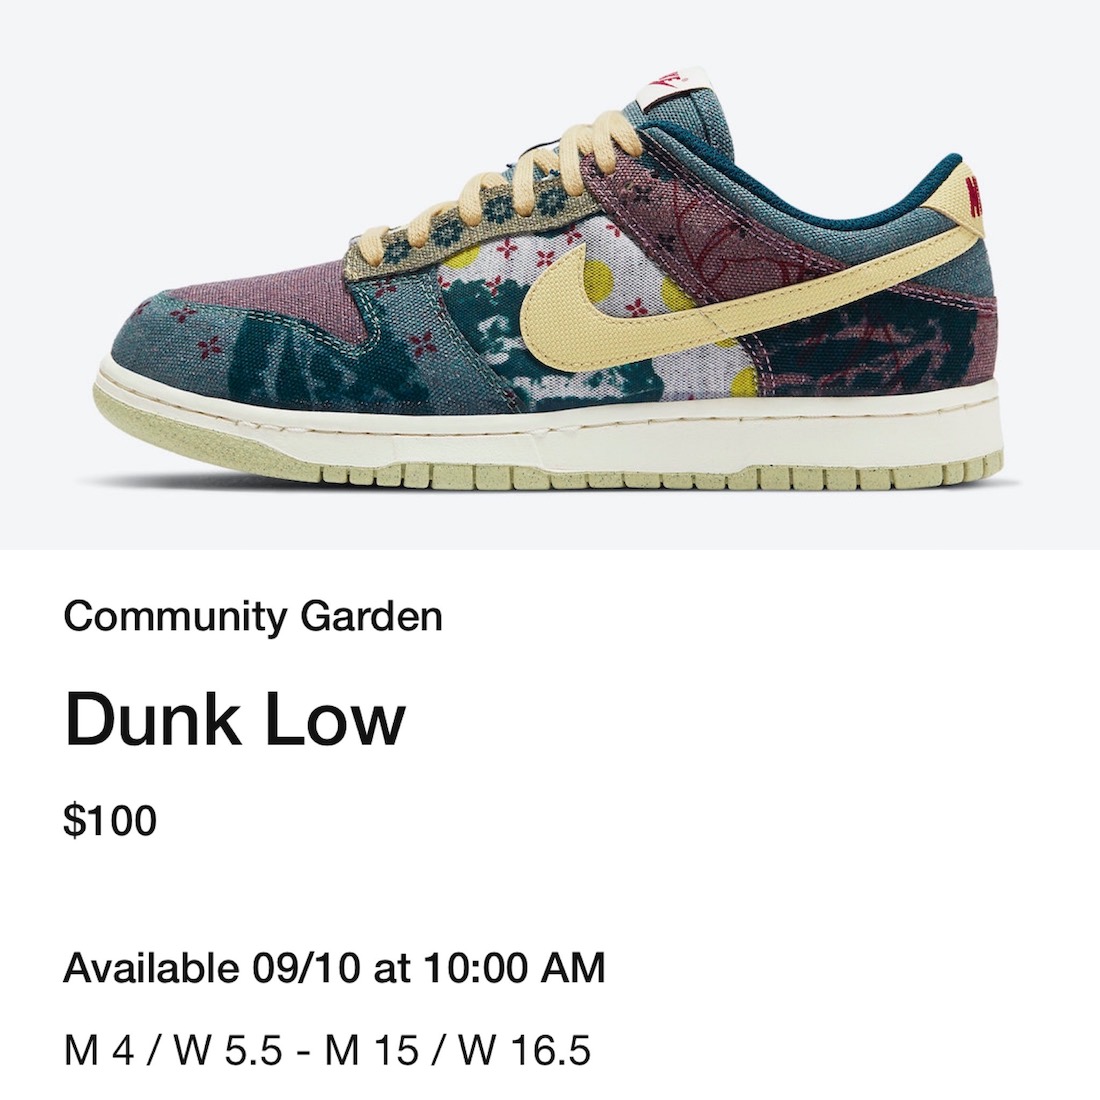 Nike Dunk Low Community Garden CZ9747-900 Release Date